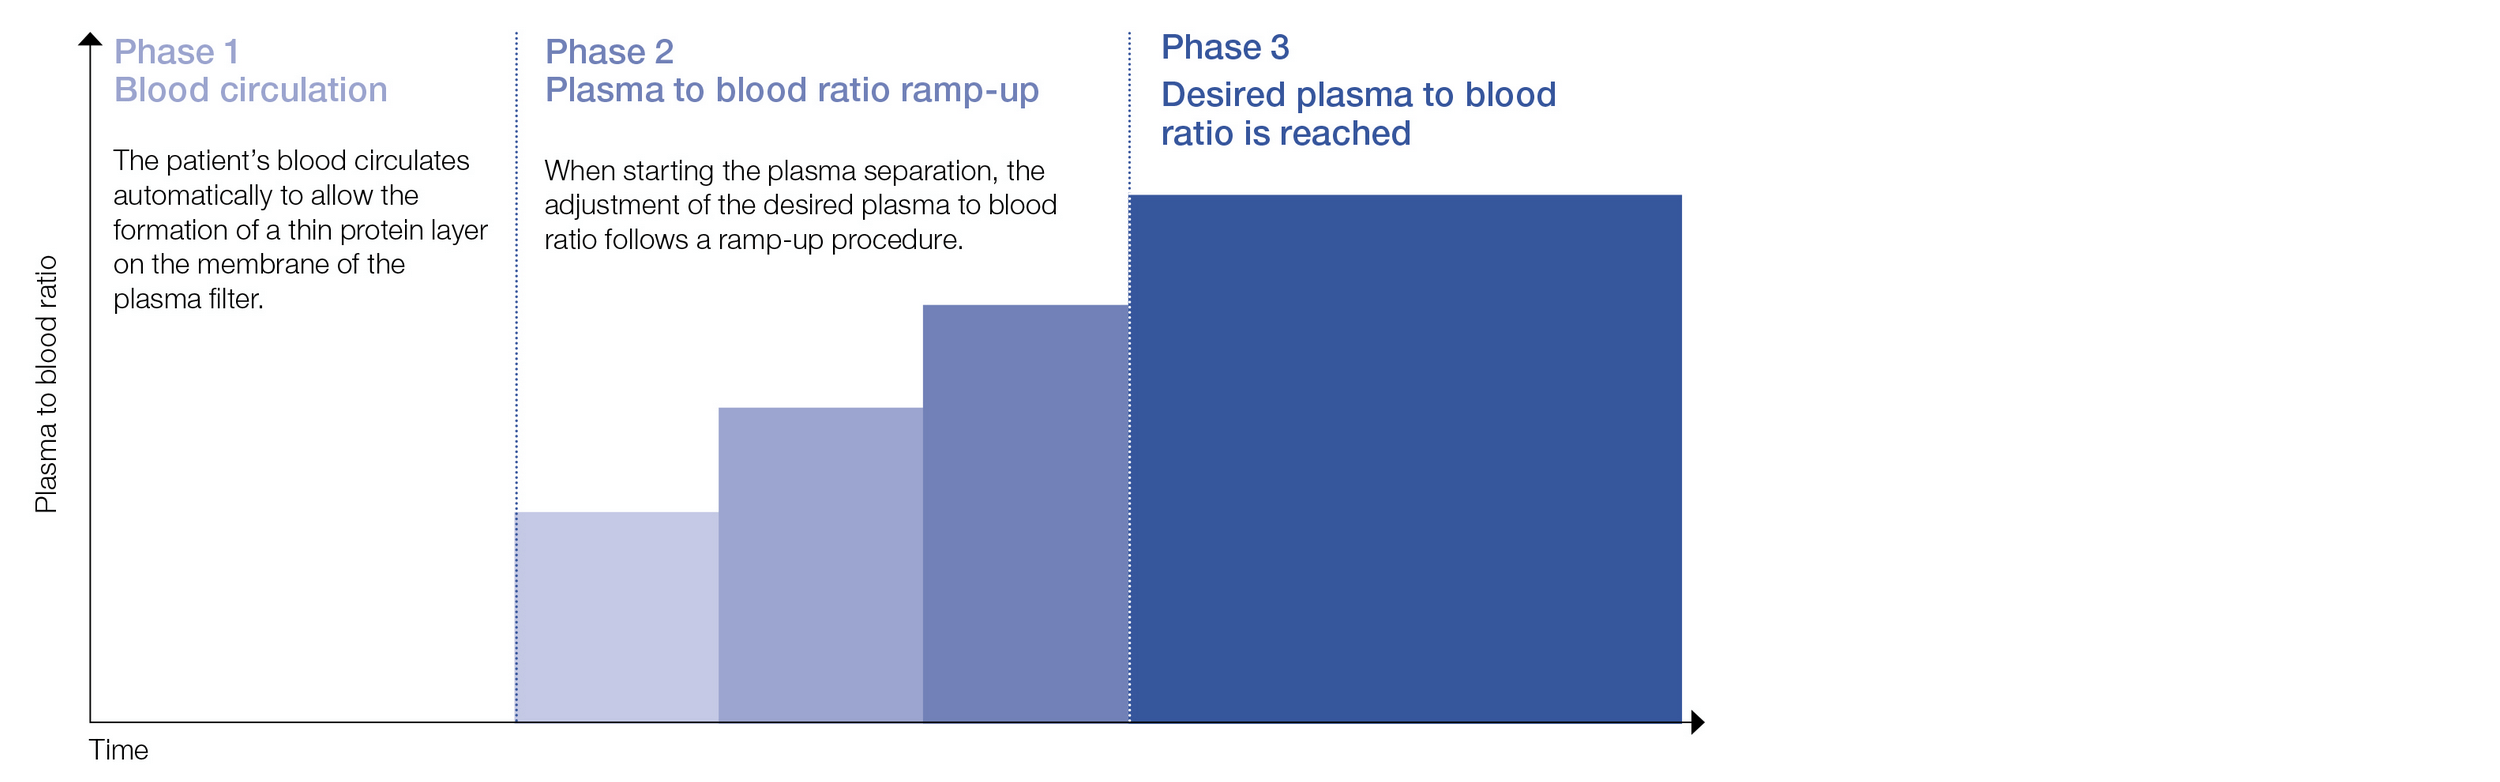 Steigerung des Plasma/Blut-Verhältnisses